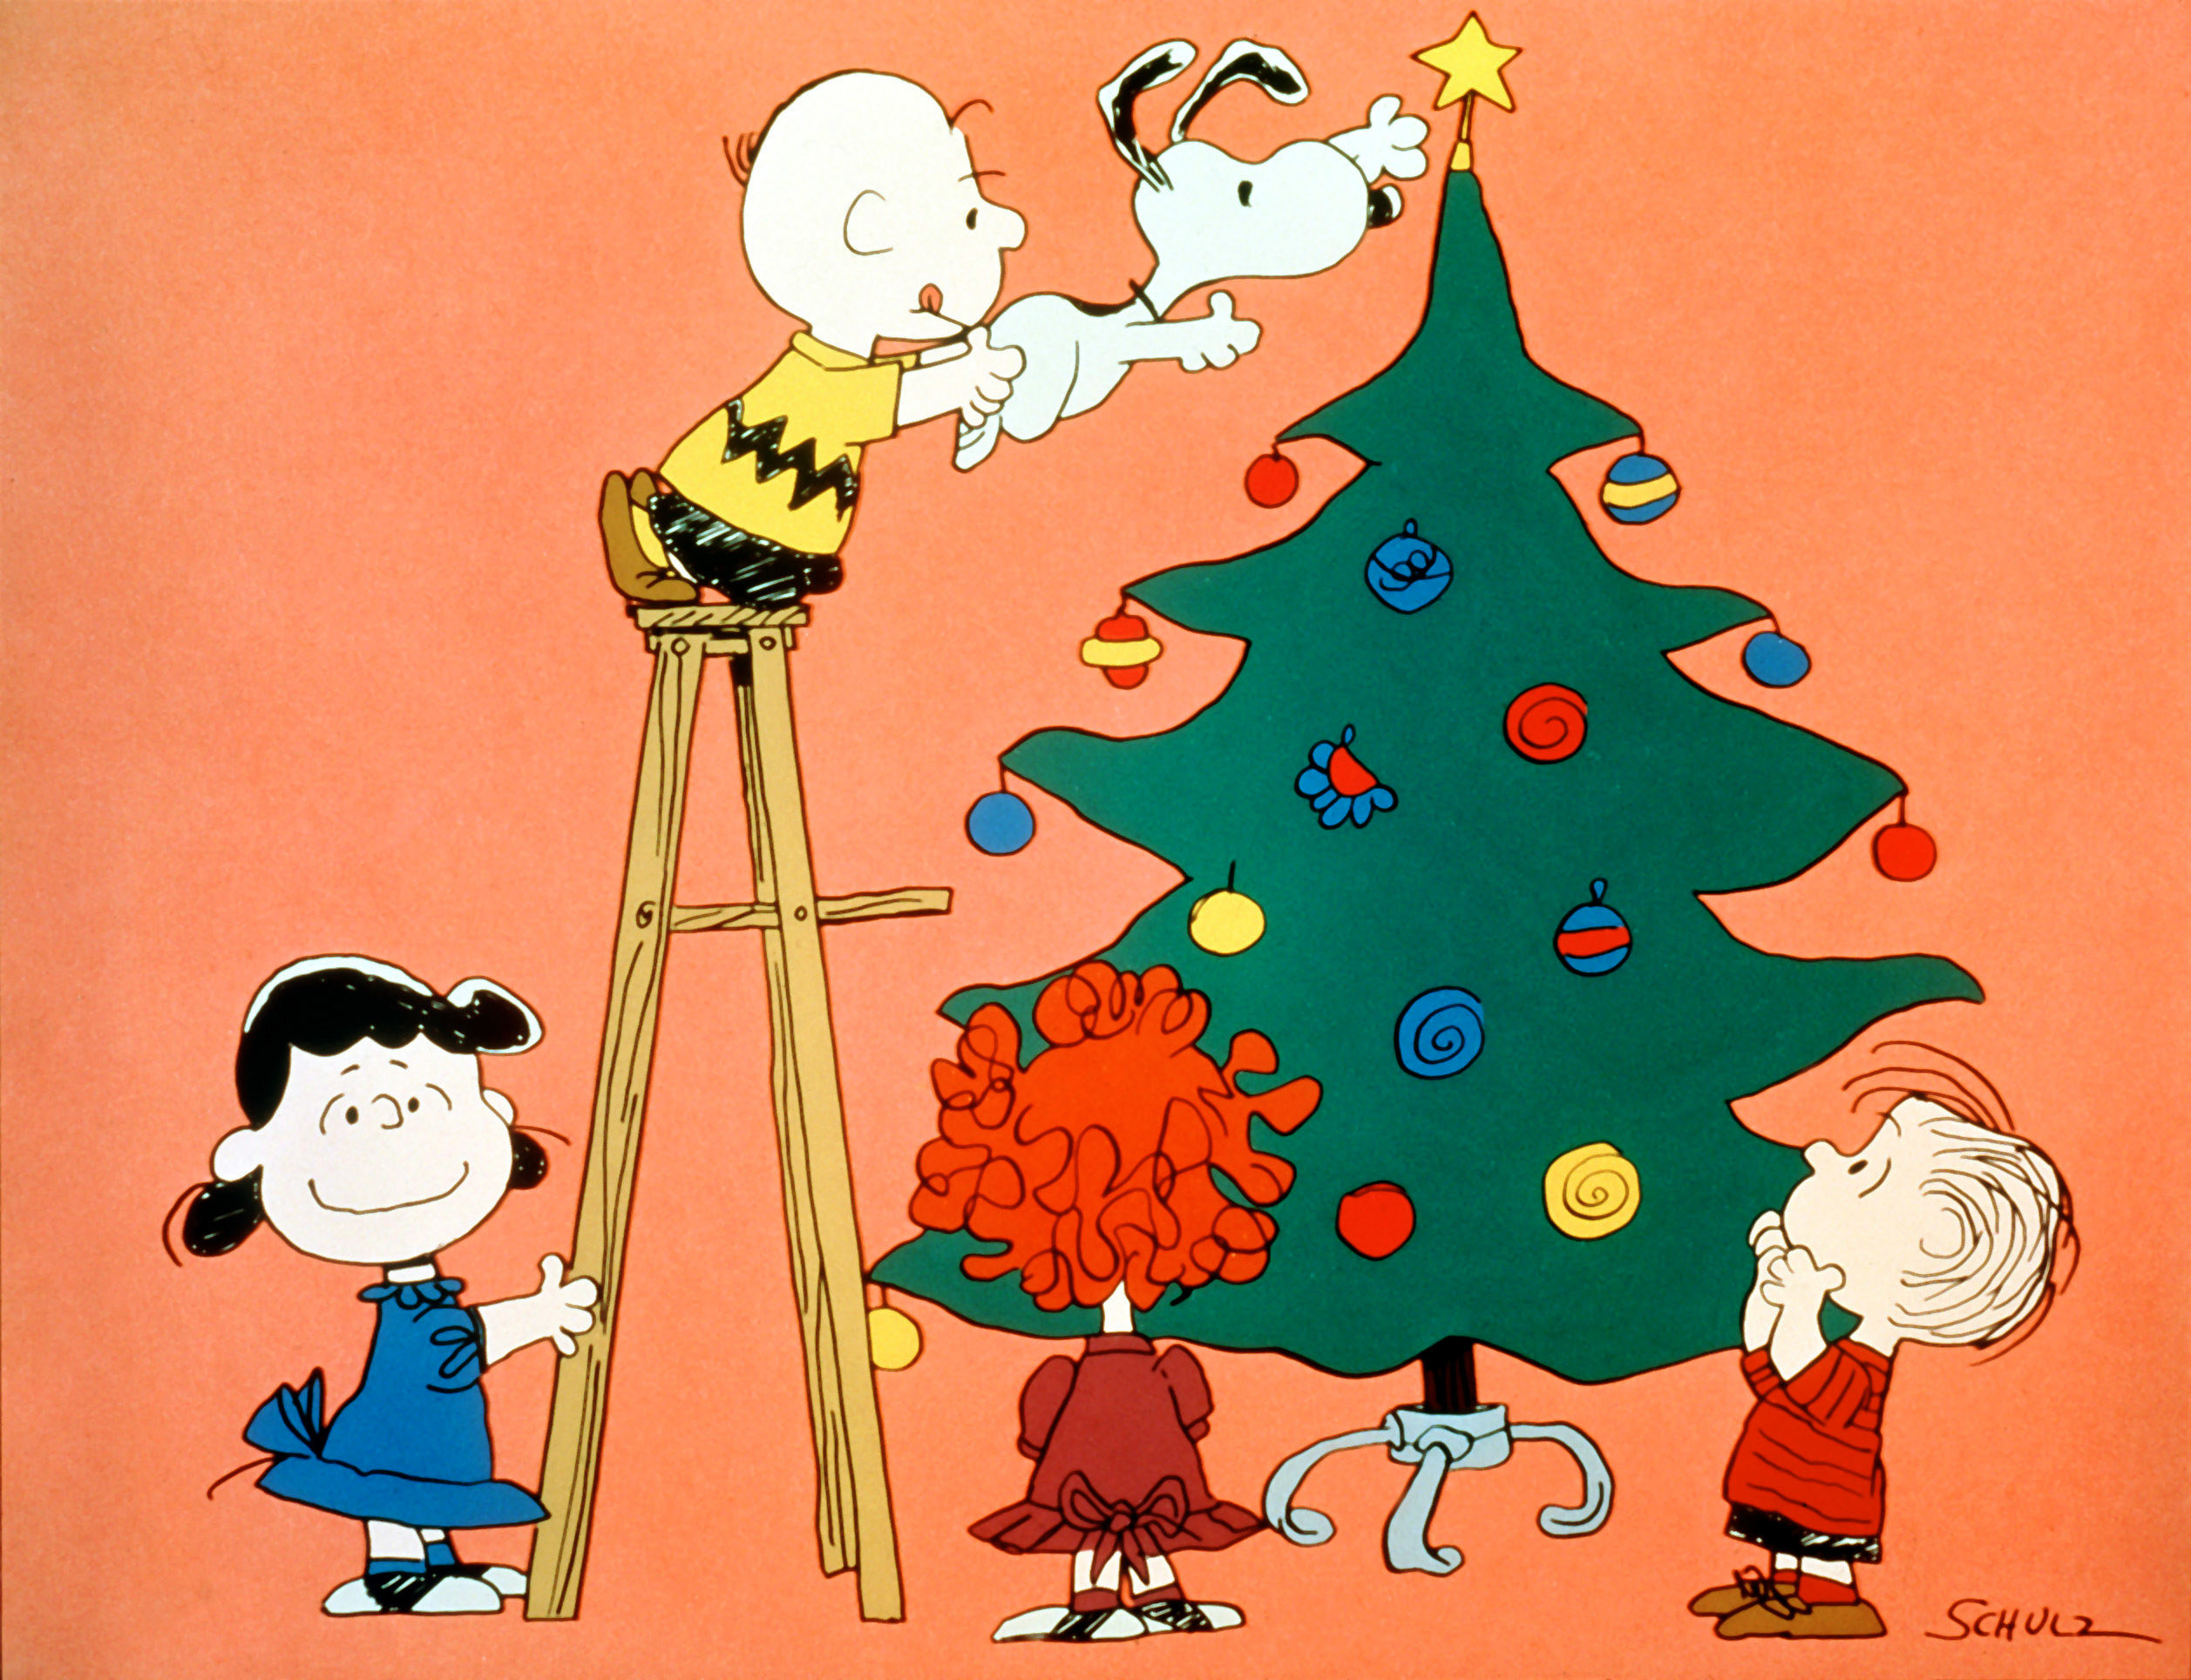 Peanuts cast decorating a tree